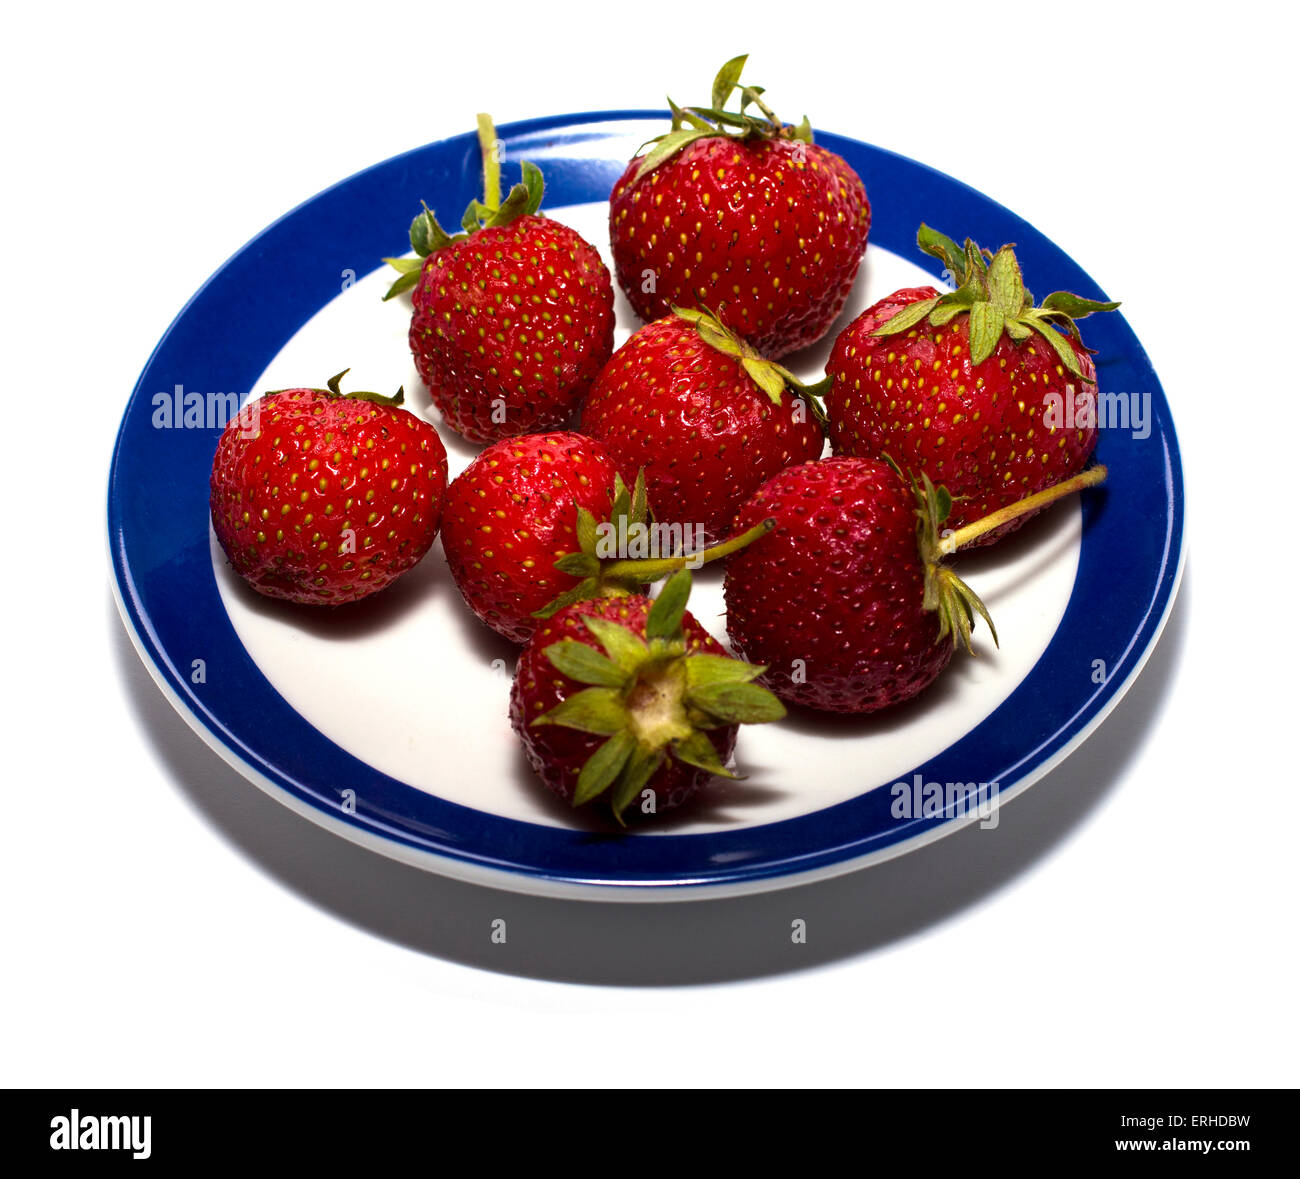 Strawberry sur une plaque ronde avec une bordure bleue Banque D'Images